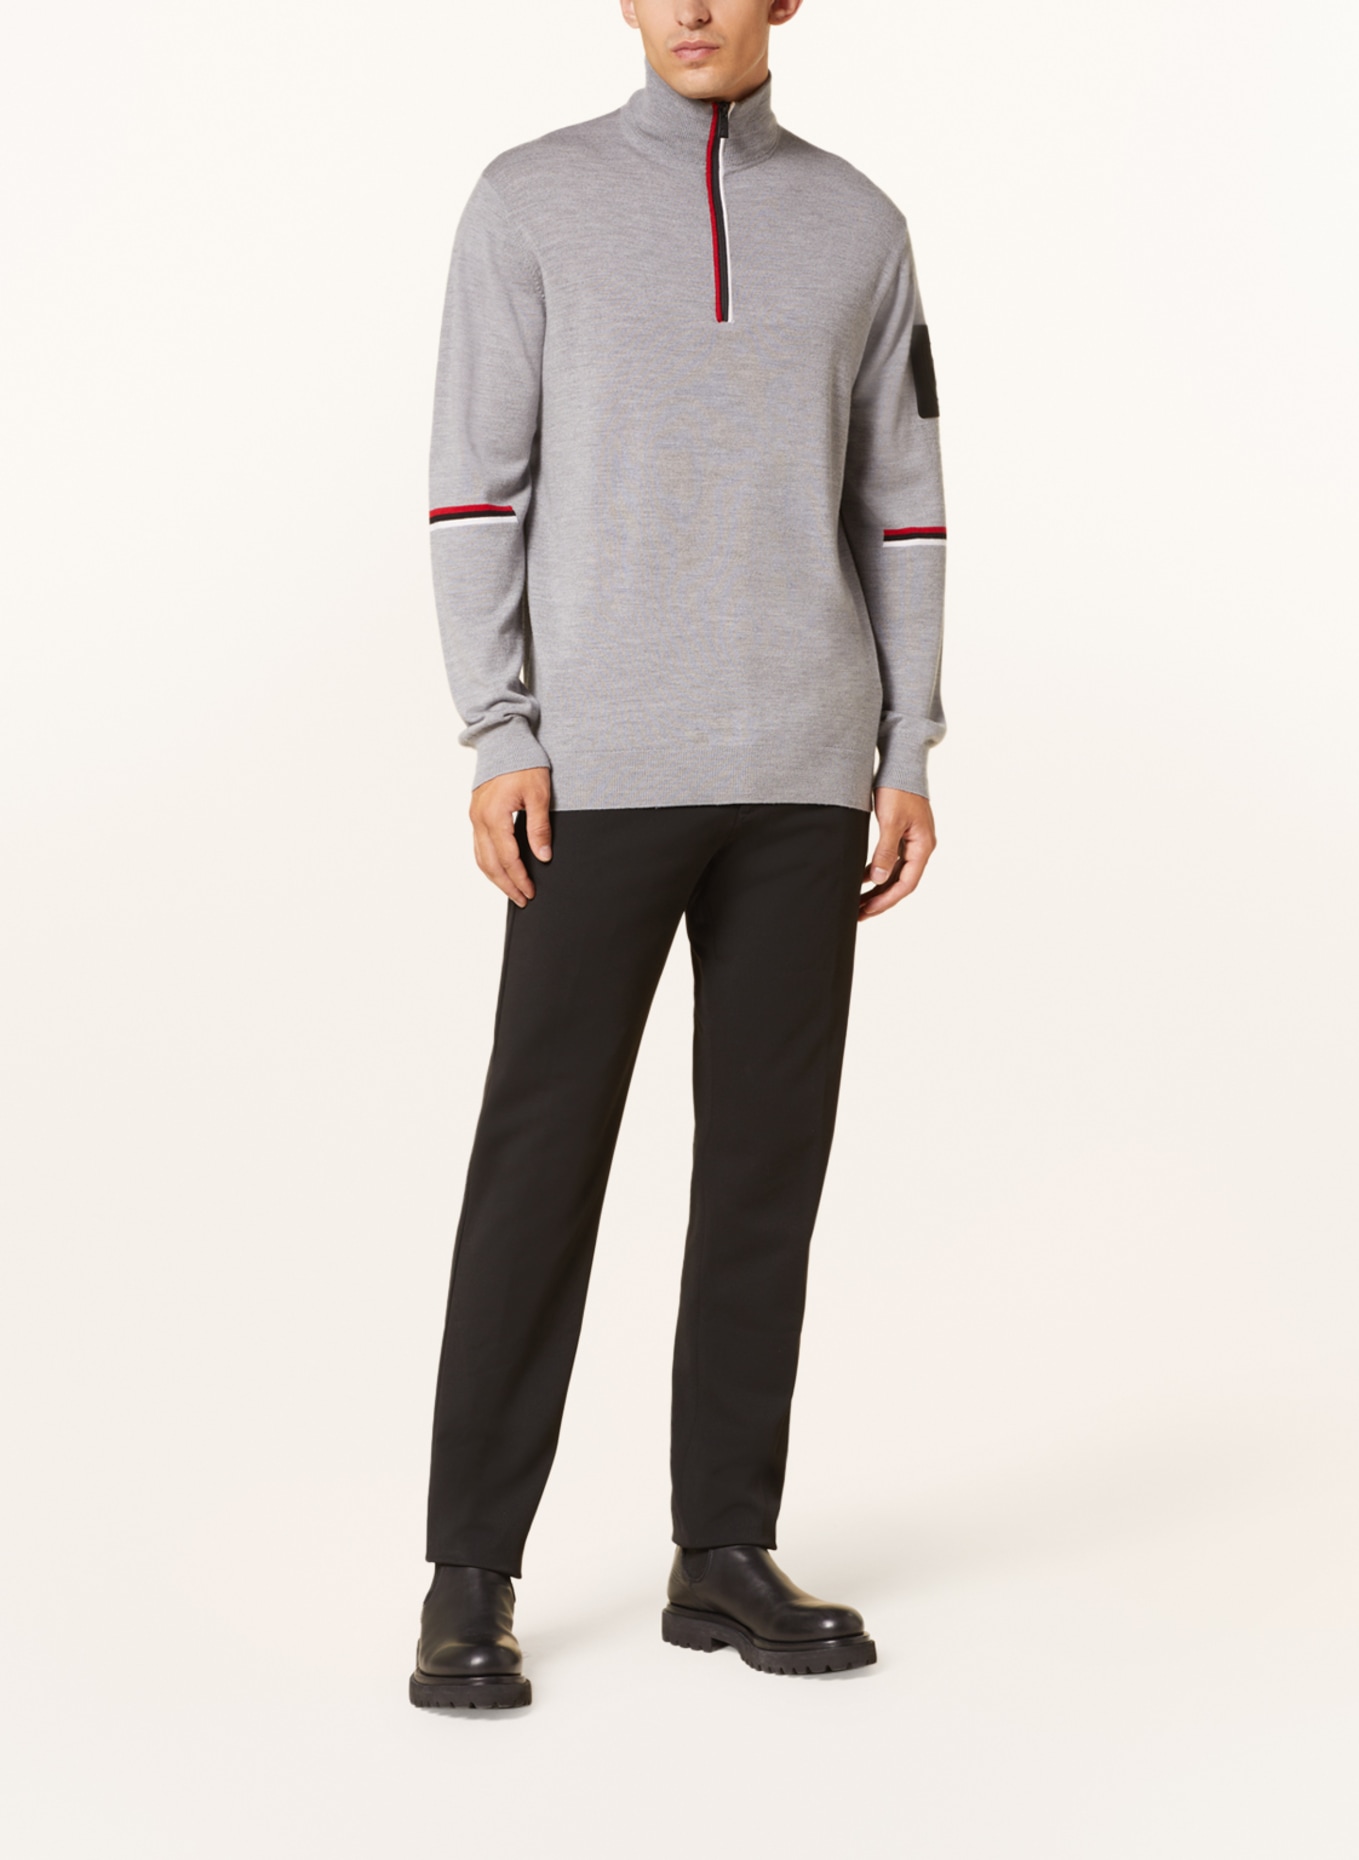 toni sailer Half-zip sweater MAGNUS in merino wool, Color: GRAY (Image 2)